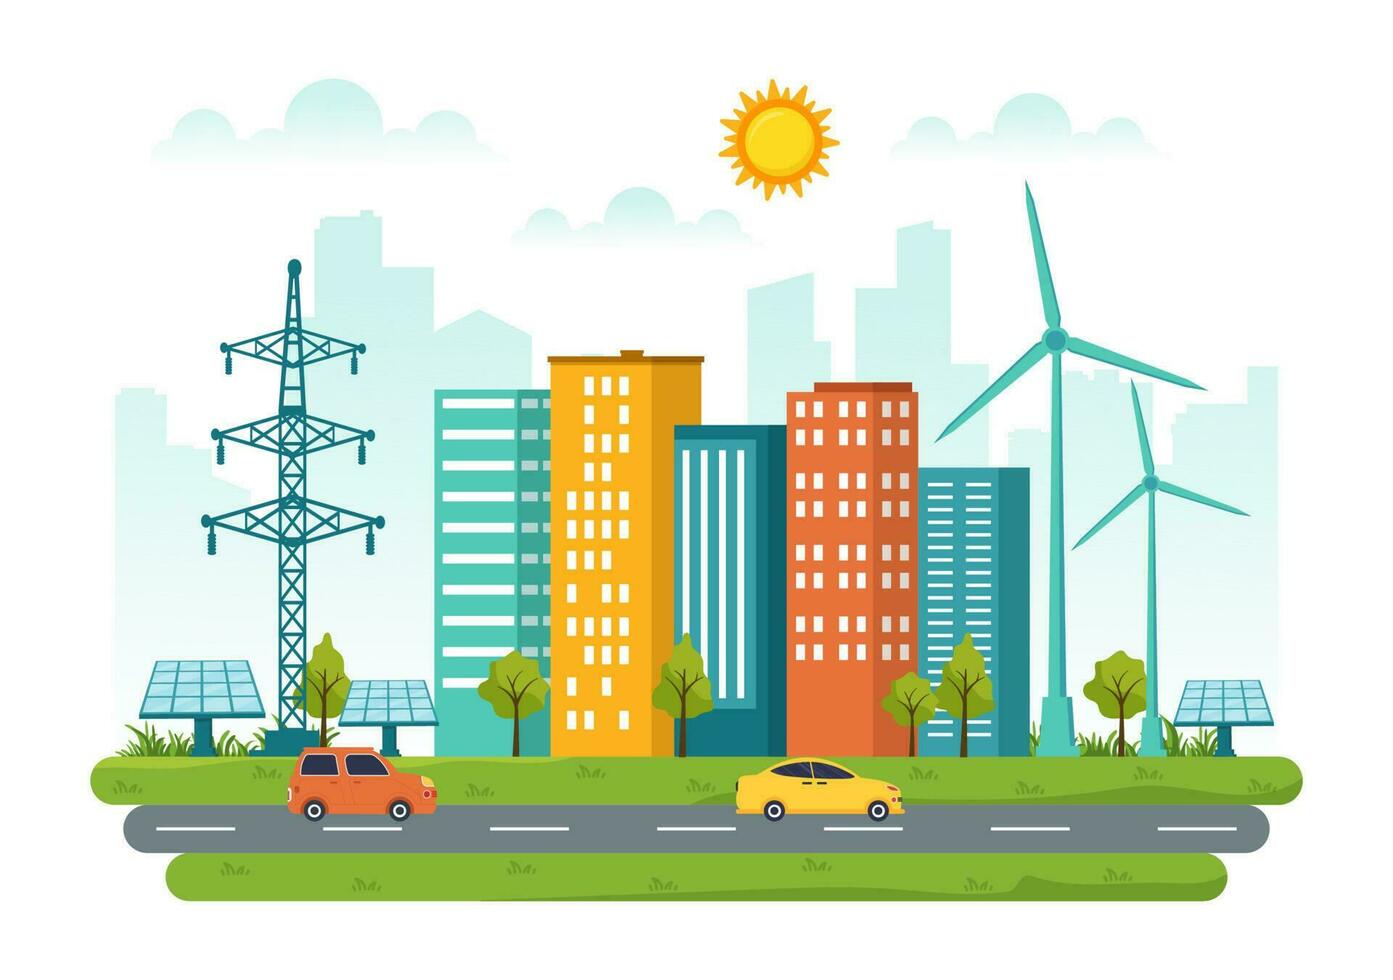 energie rendement in de stad vector illustratie met duurzame milieu voor elektriciteit gegenereerd van zon en wind in hand- getrokken Sjablonen